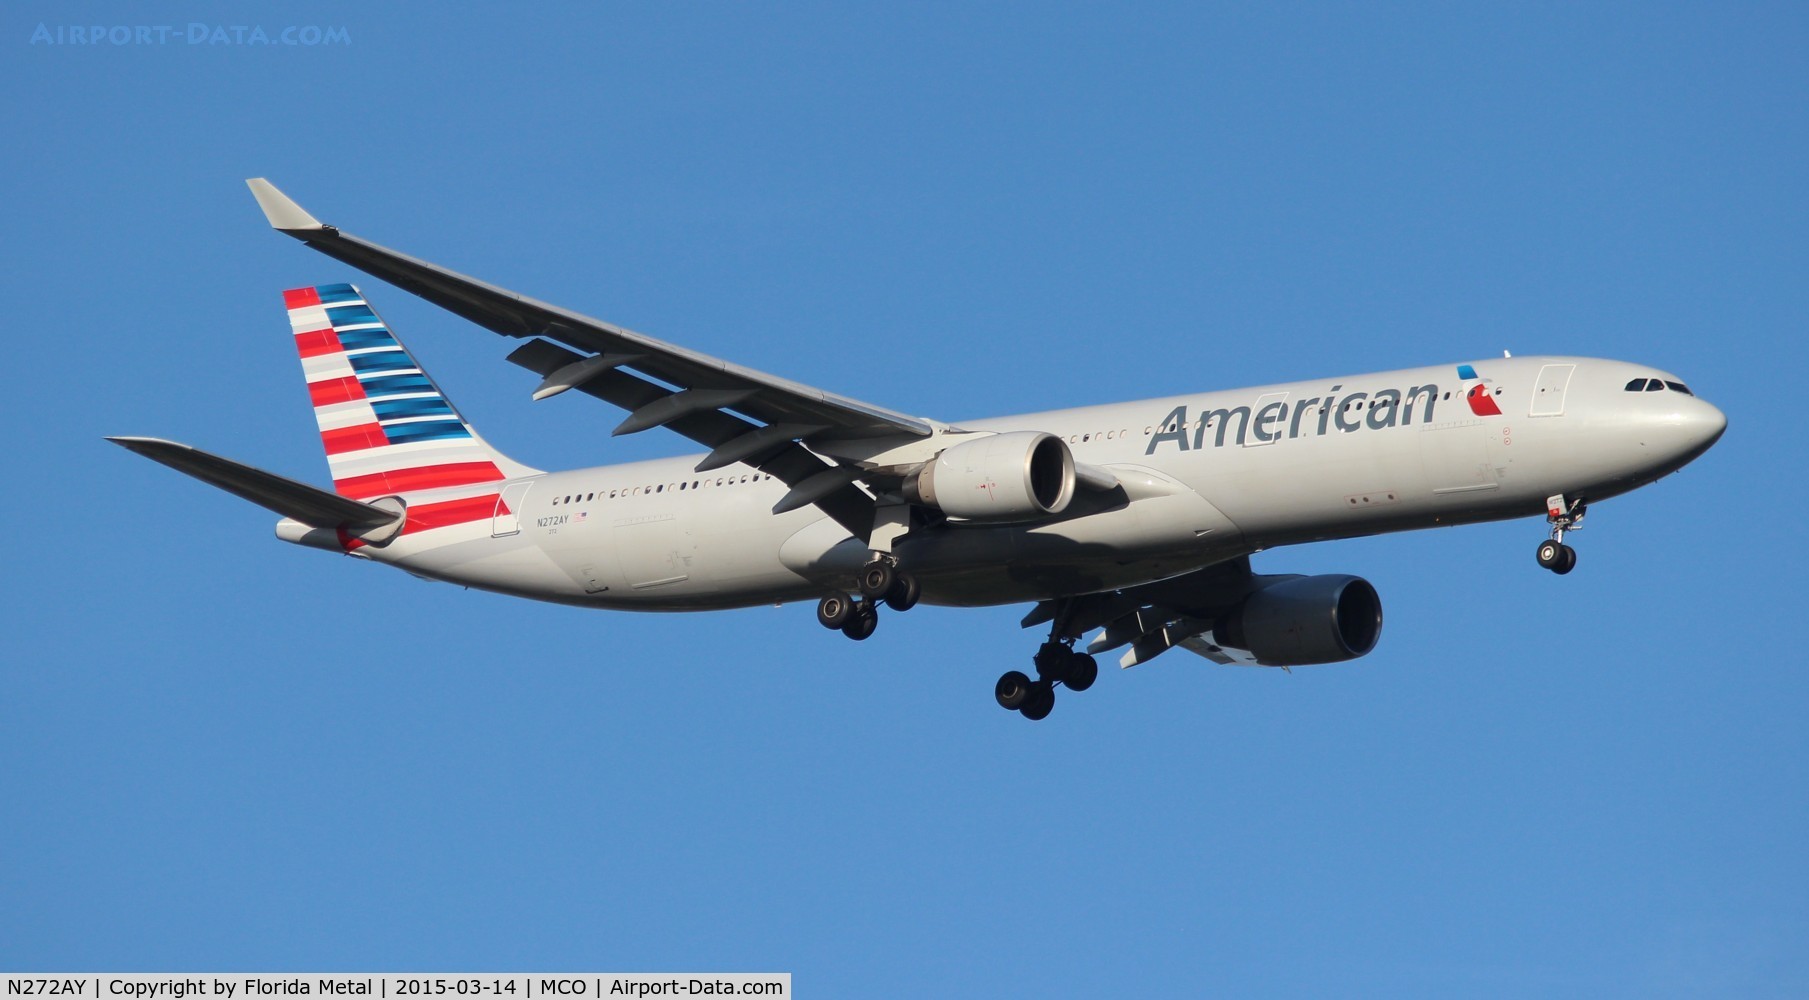 N272AY, 2000 Airbus A330-323 C/N 333, American